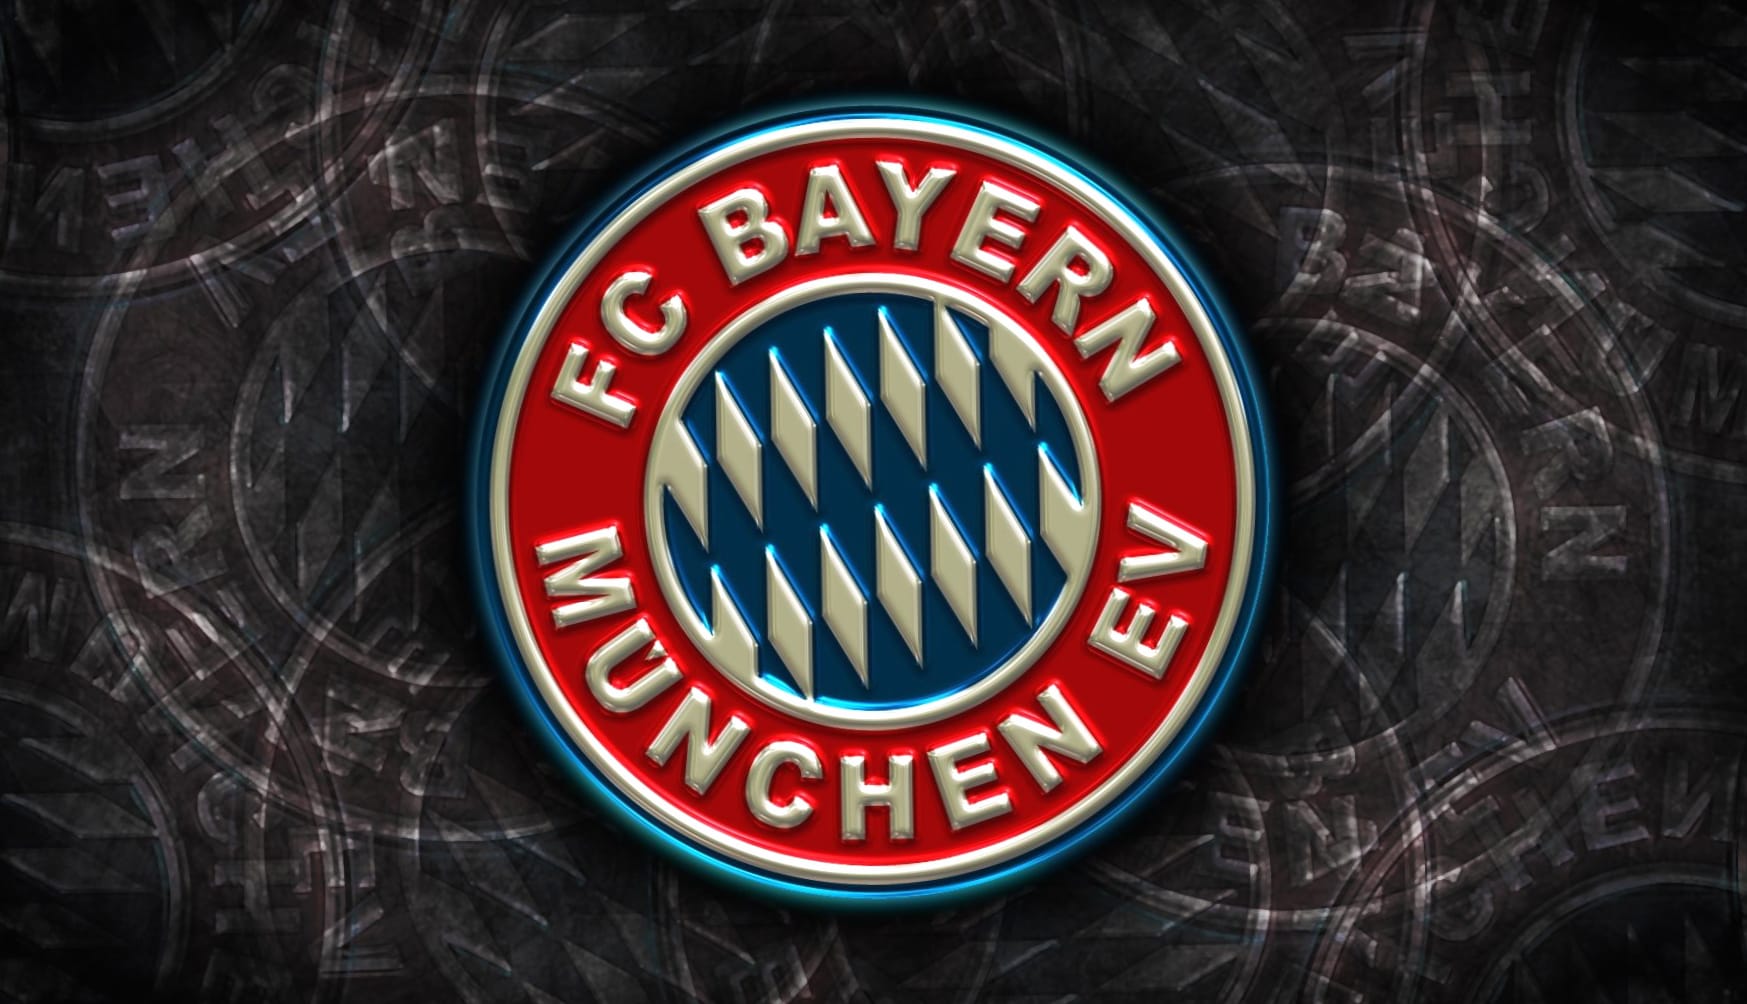 FC Bayern Munich at 1280 x 960 size wallpapers HD quality